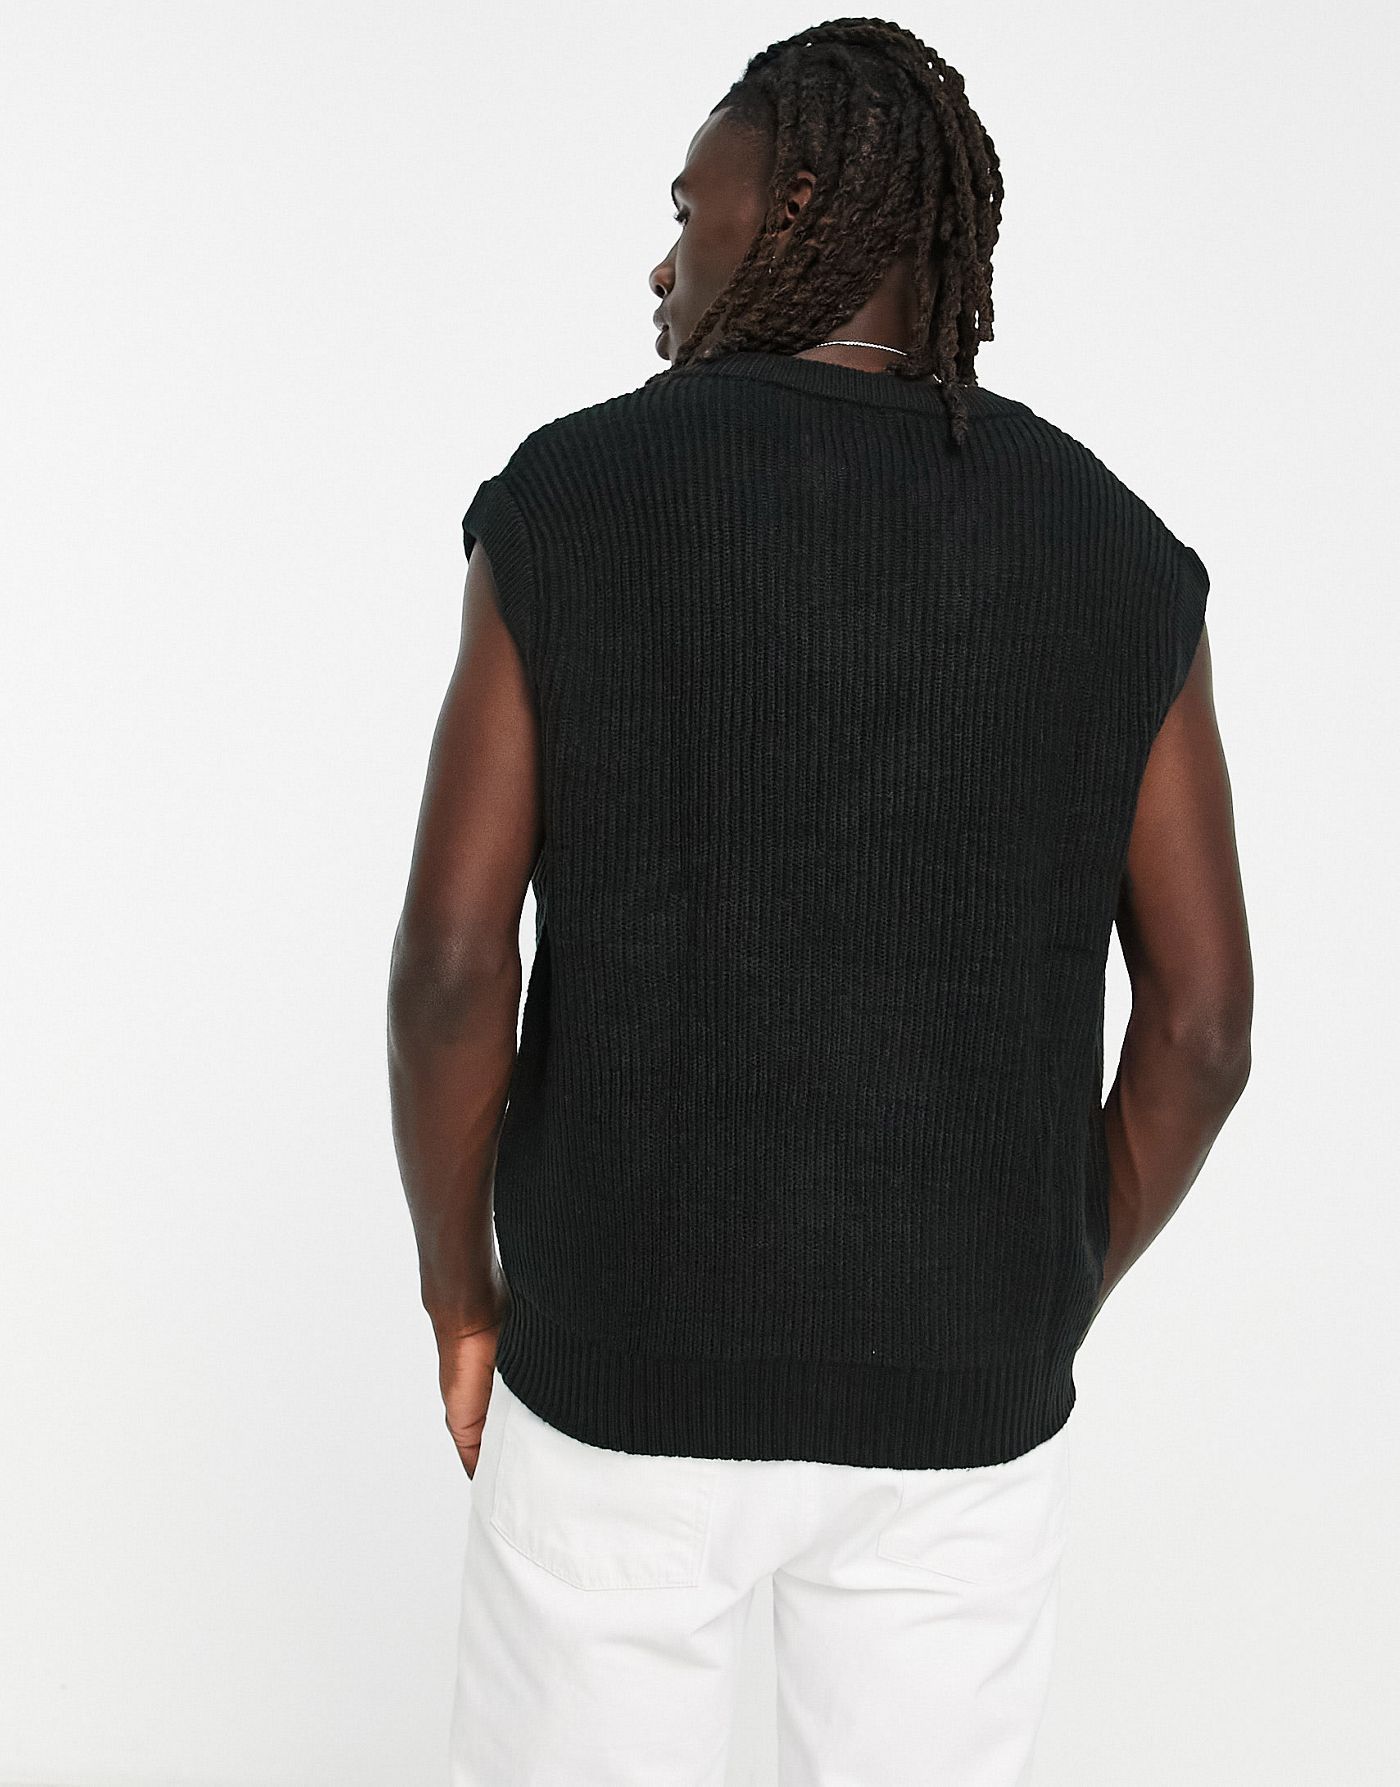 Bershka chunky knit sweater vest in black